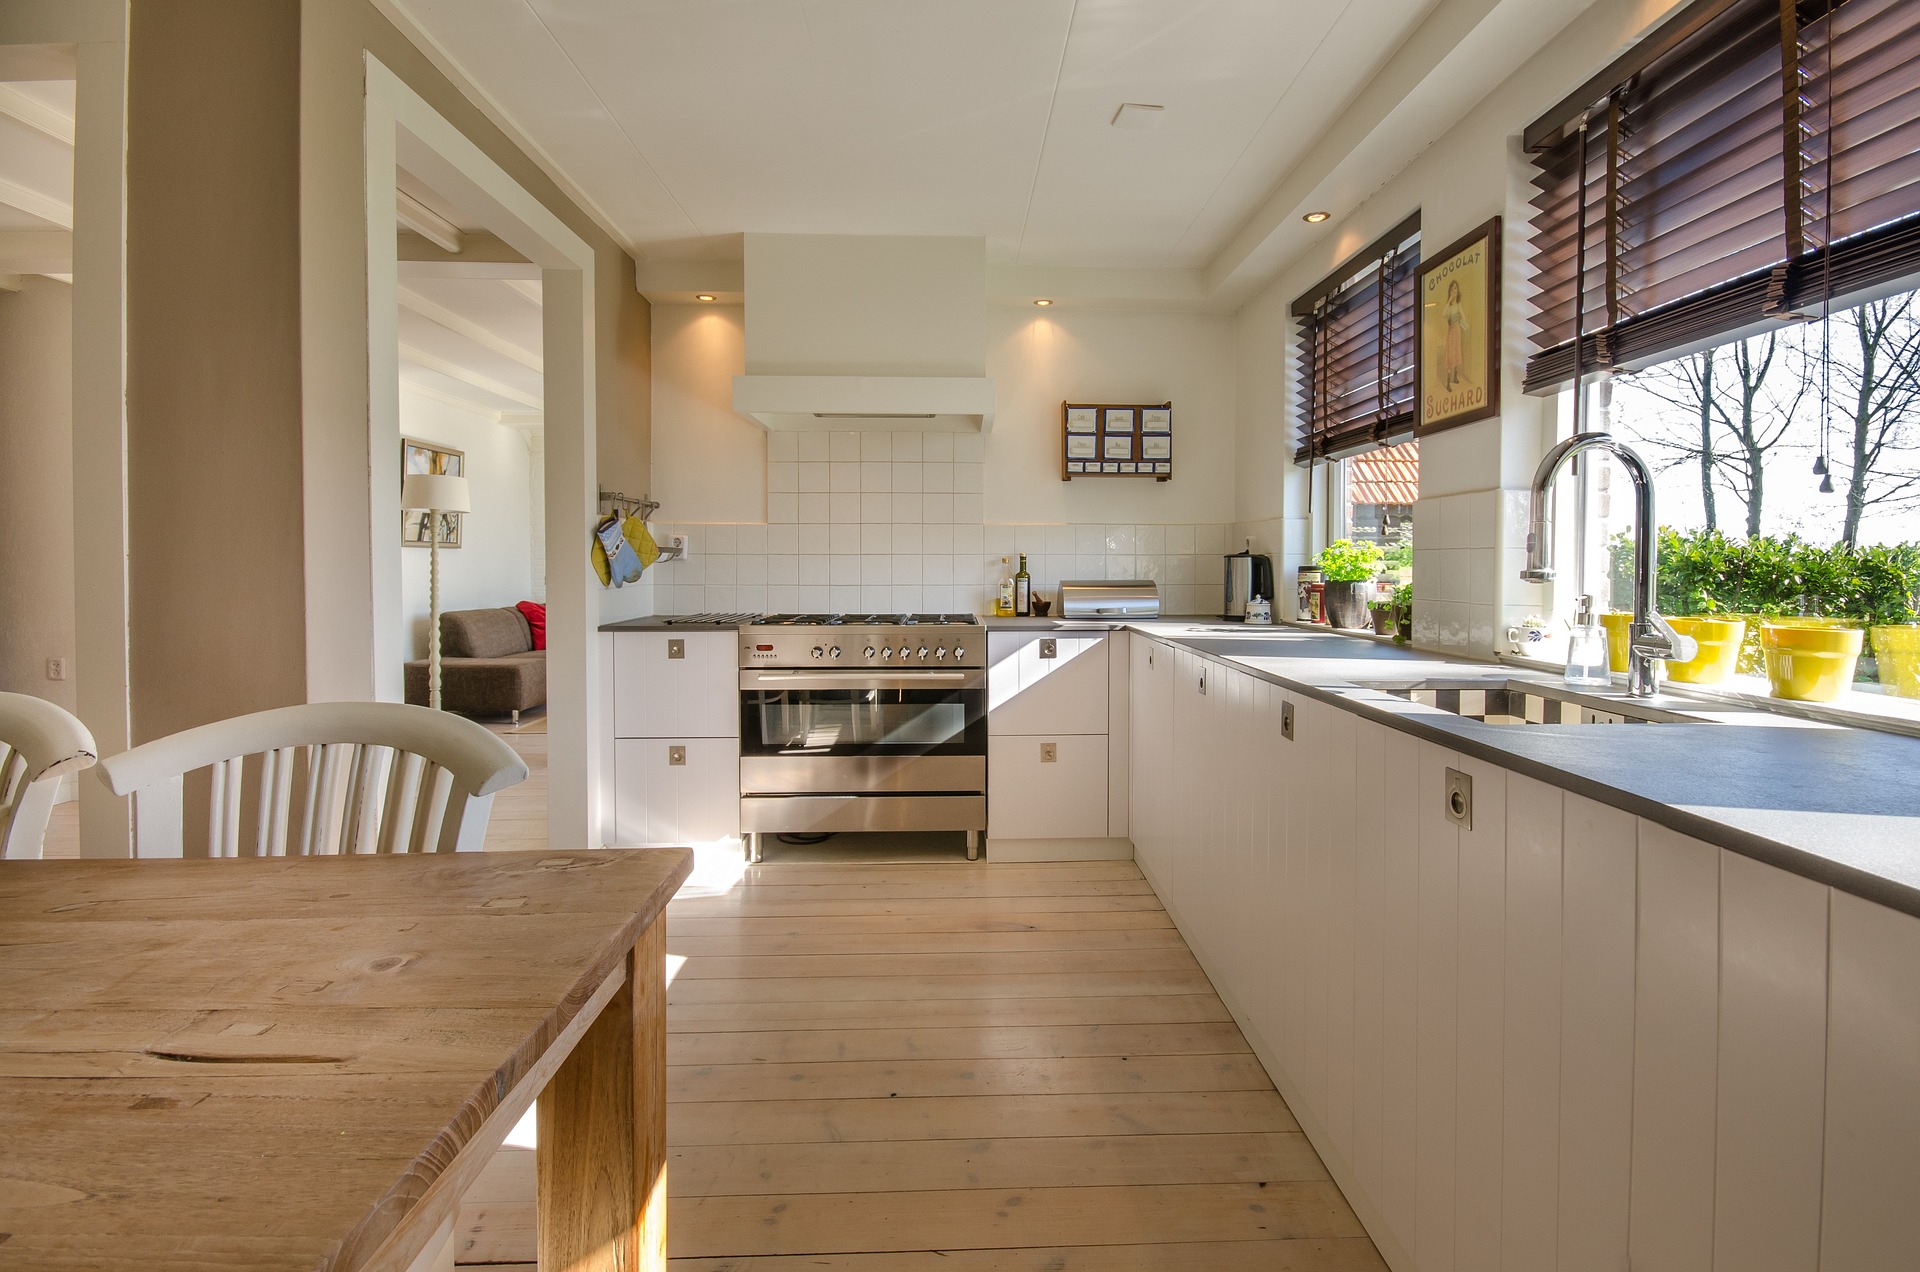 Małe obrazki do kuchni: Dodaj więcej uroku do swojej przestrzeni